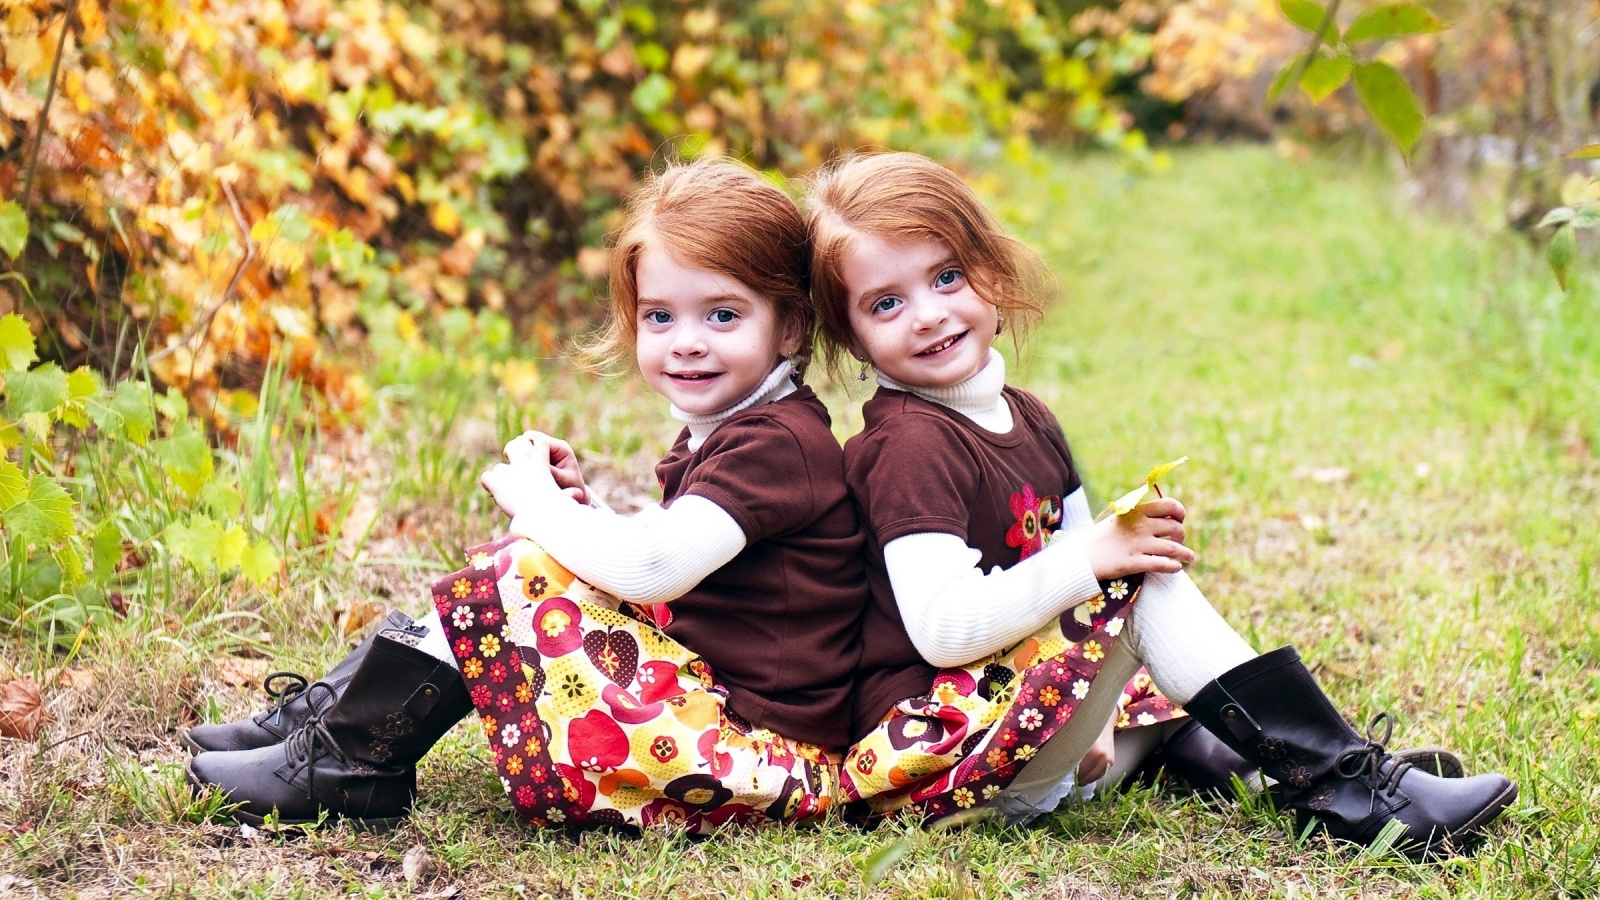 Близнецы, двойняшки А если у двух пар близнецов родятся близнецы, будут ли они похожи? | Пикабу